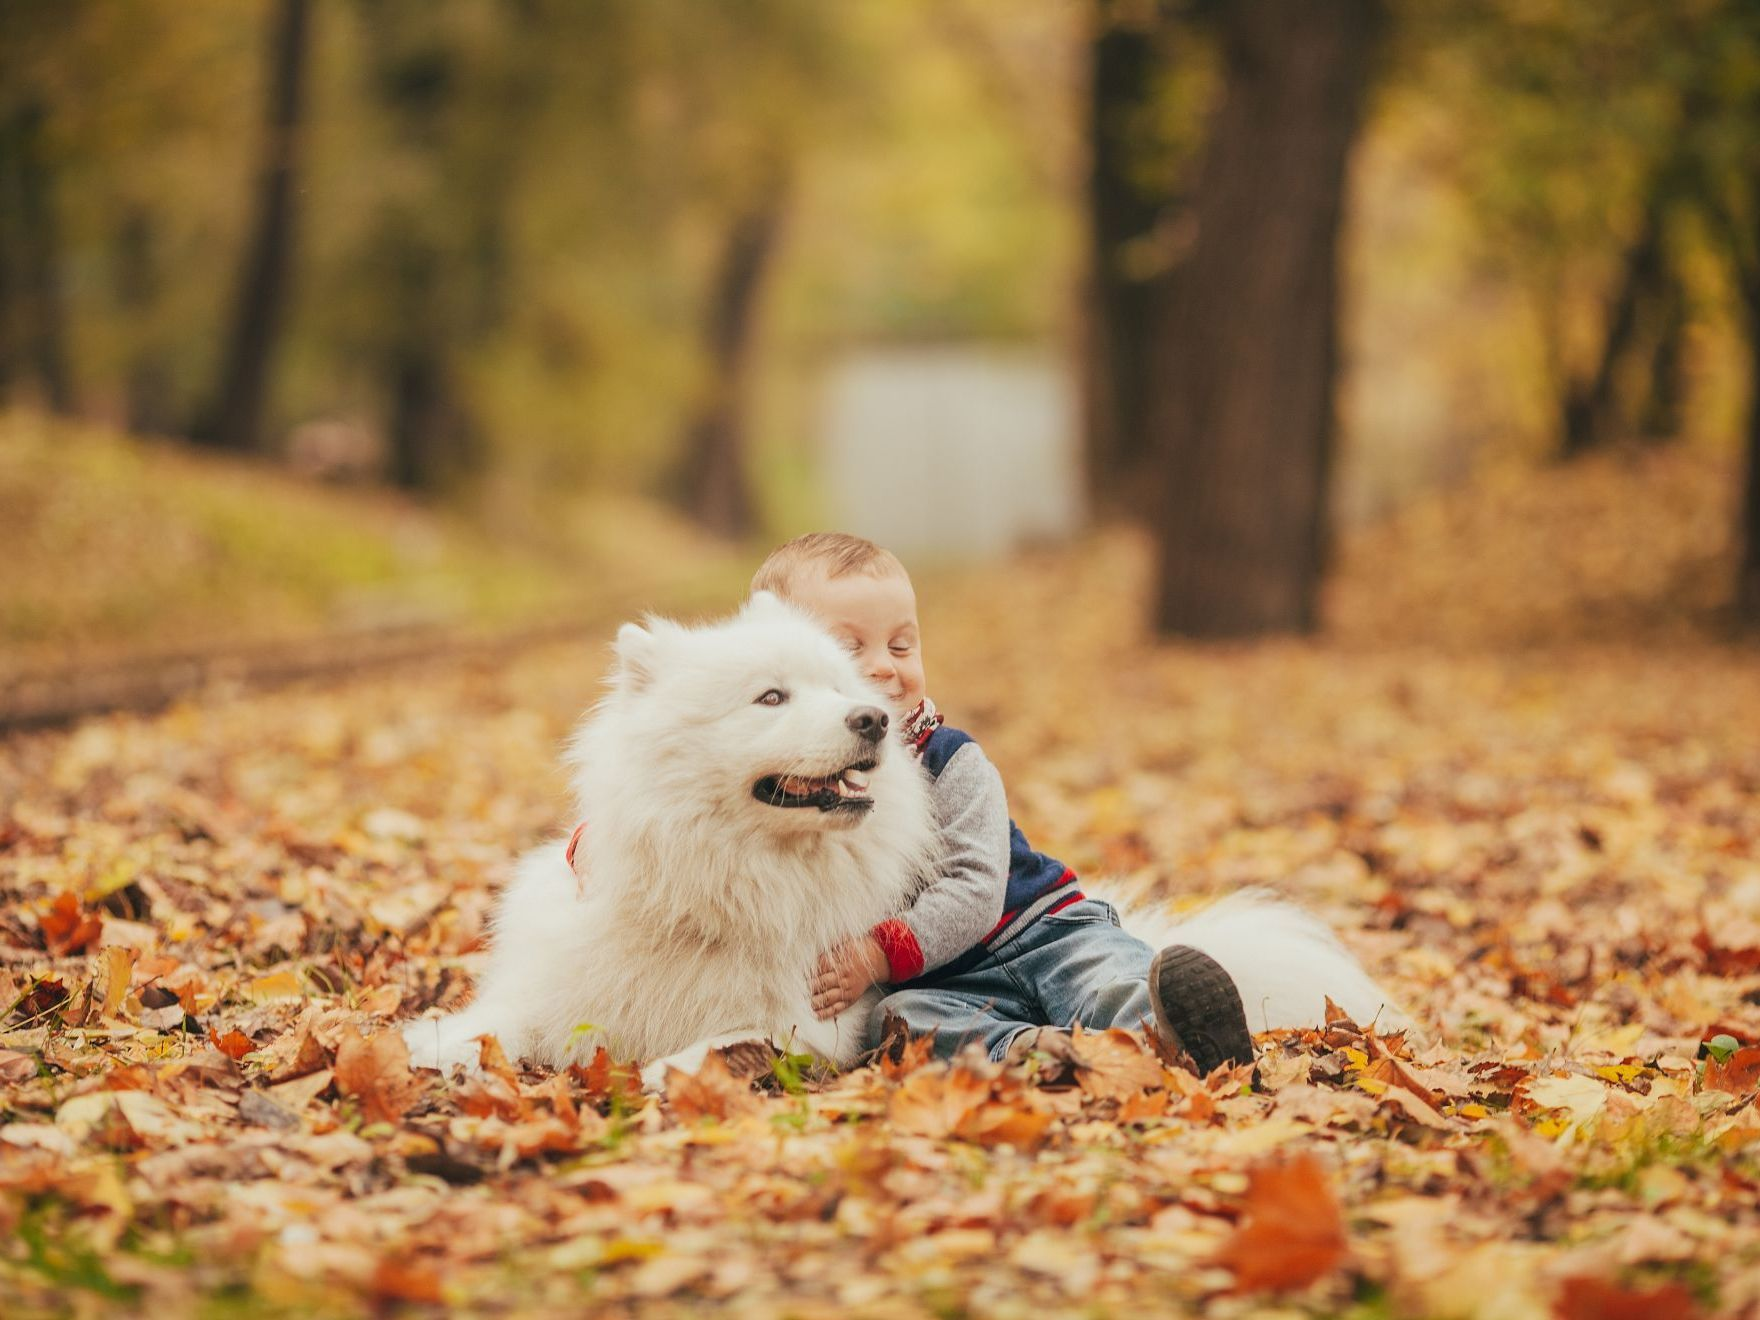 petit garçon à côté d’un chien samoyède dans un parc en automne.